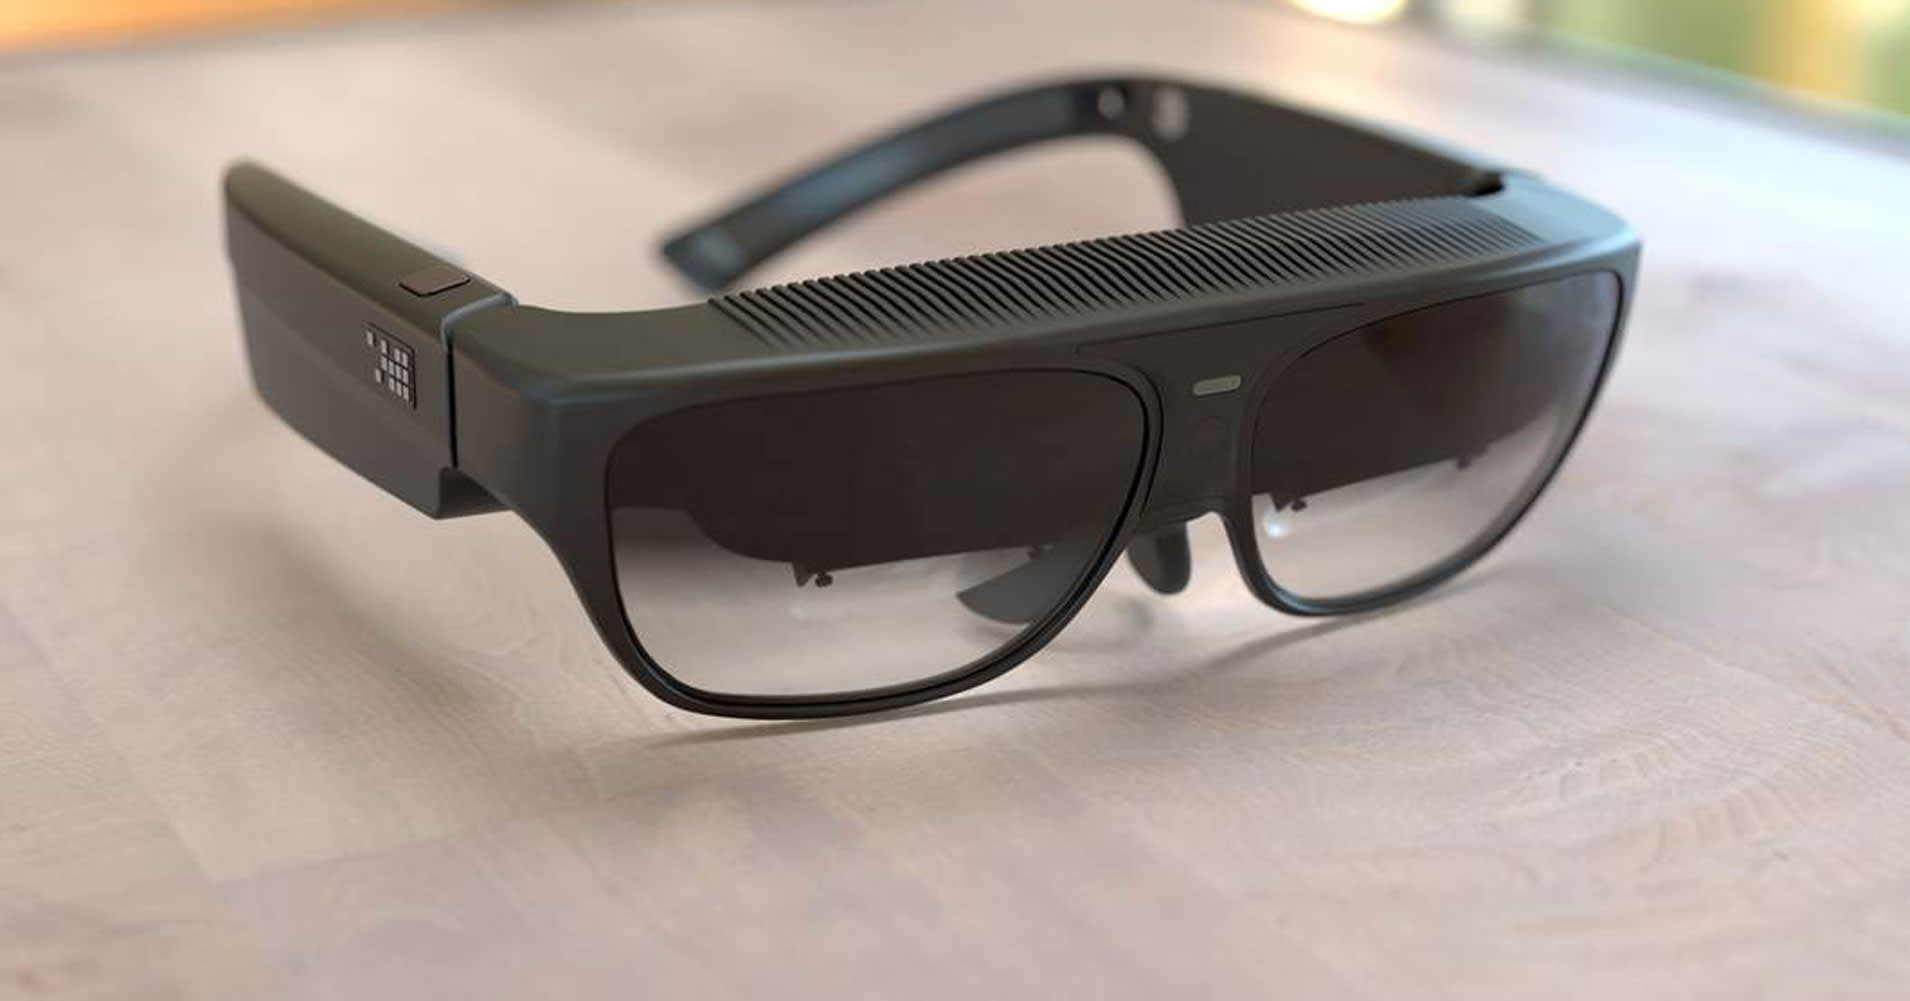 Lighed Sløset Fremskridt Augmented reality glasses, for the masses, for $2,750